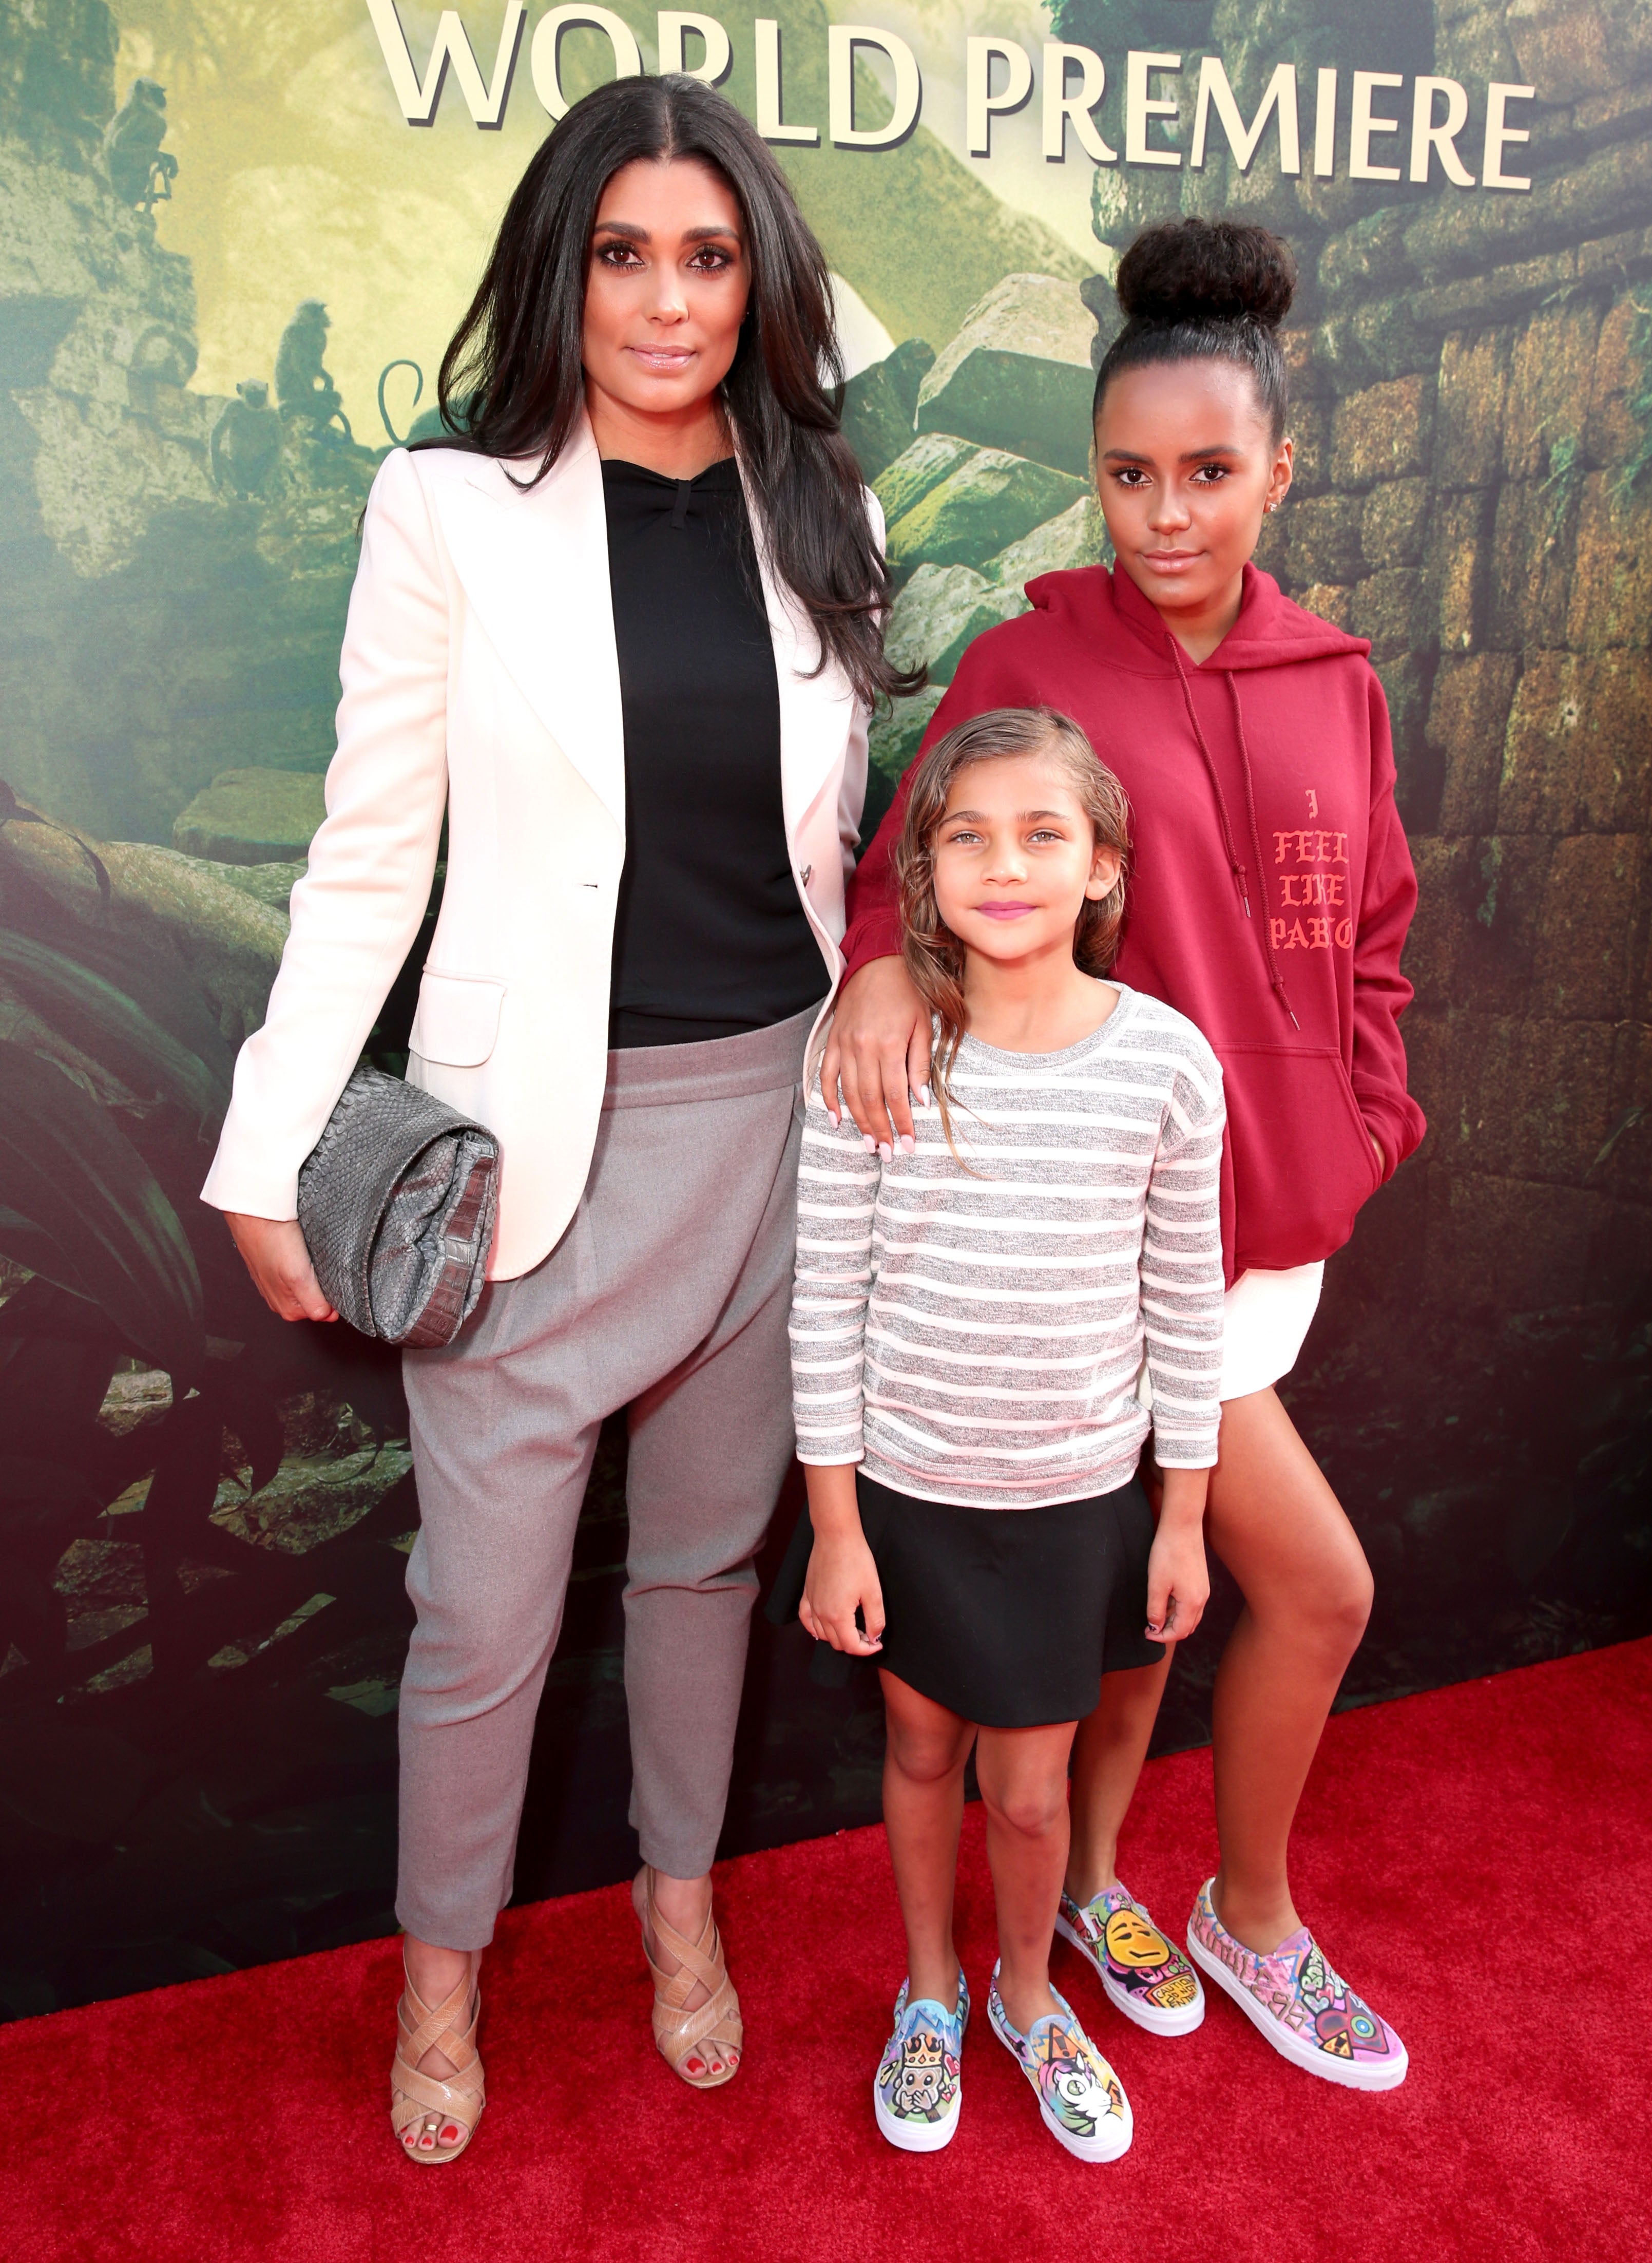 Red Carpet Recap: Stars Heat Up 'The Jungle Book' Premiere